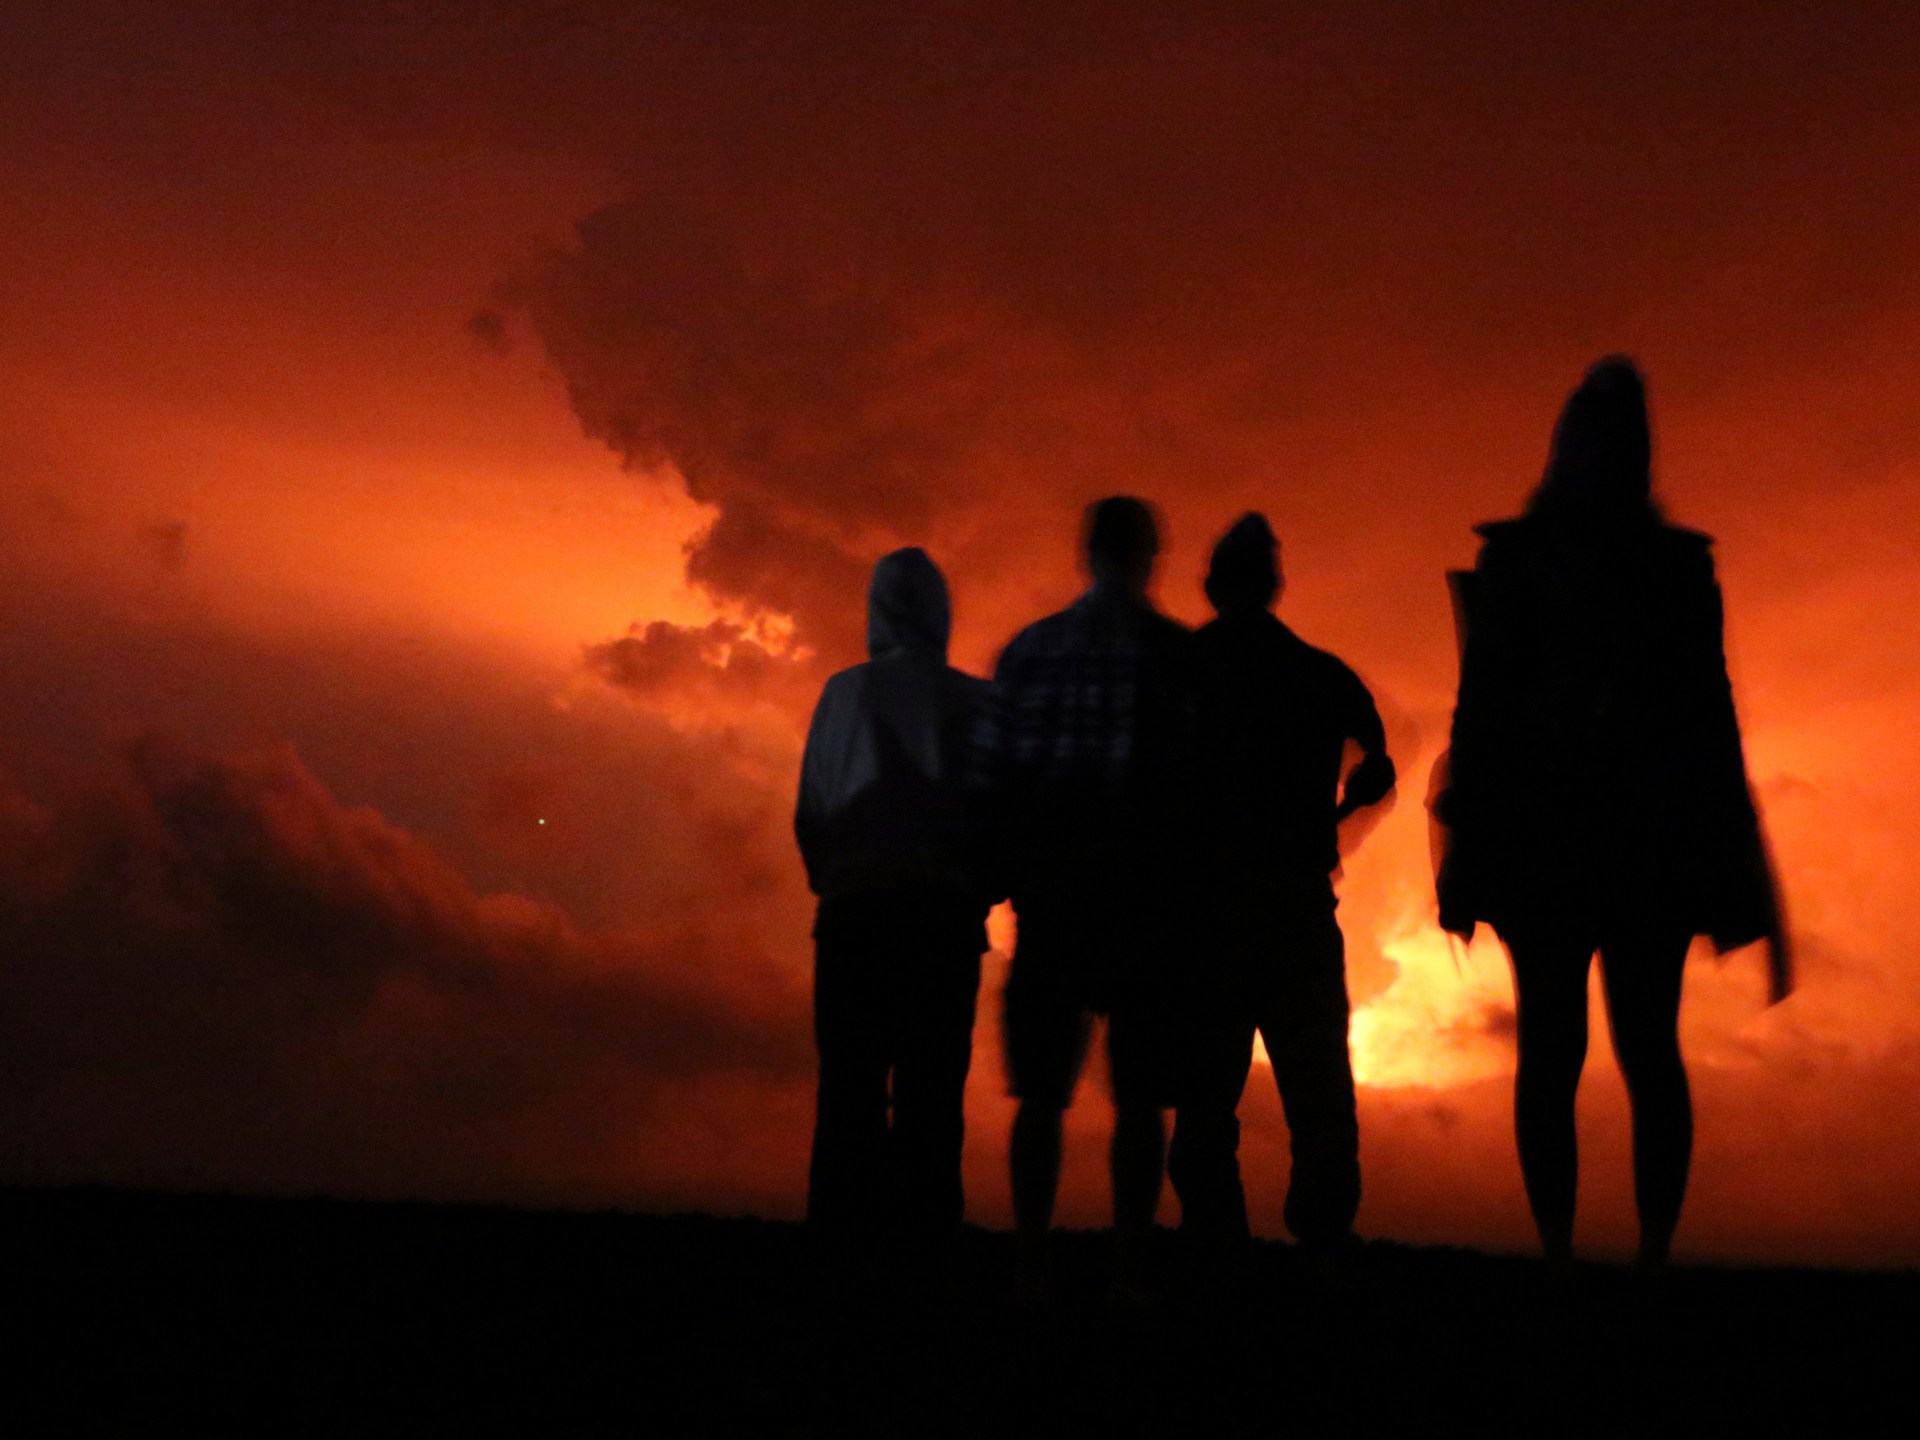 Photographs: Oozing lava attracts hundreds to Hawaii’s Mauna Loa volcano